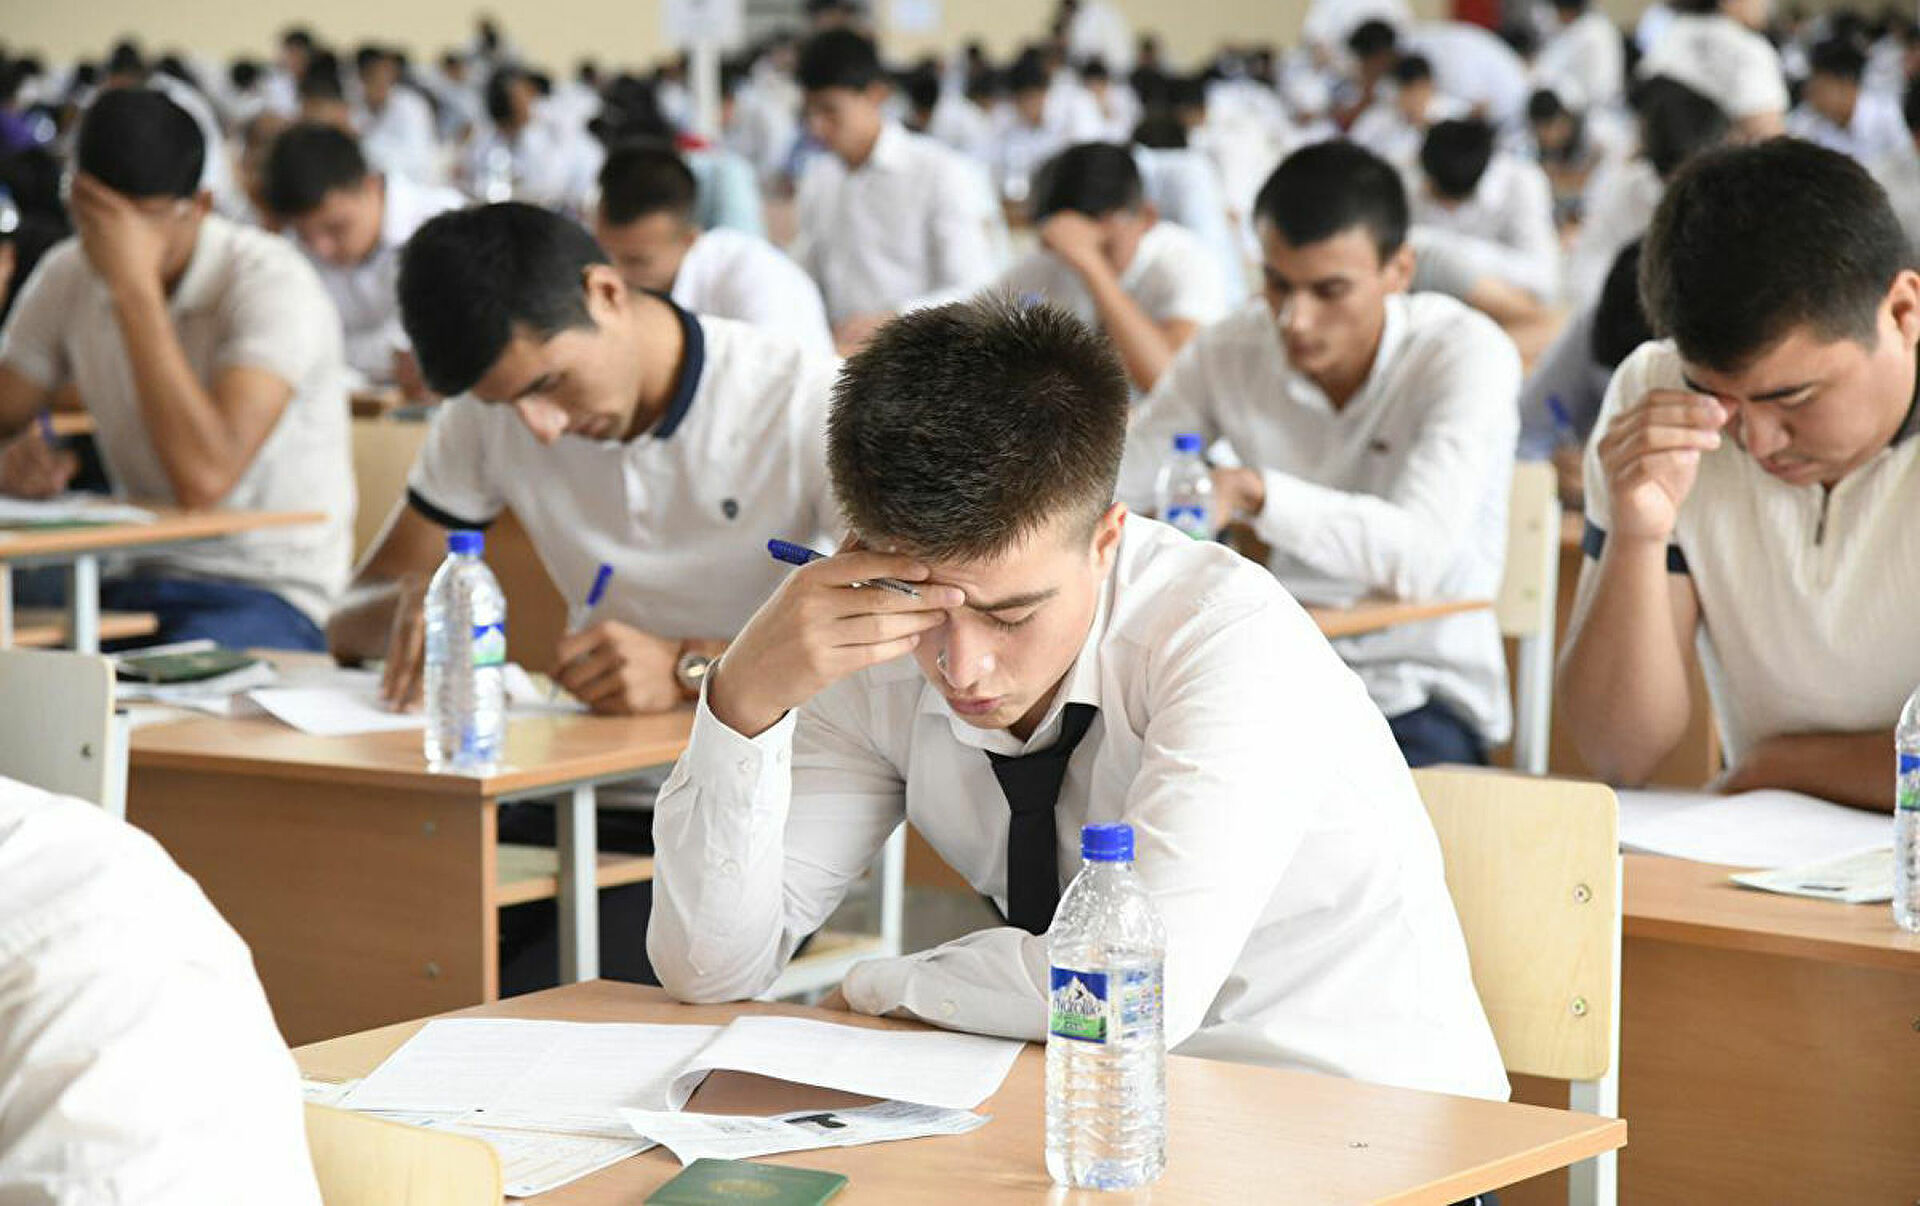 В начале тест, затем выбор: в Узбекистане меняется система вступительных экзаменов в вузы